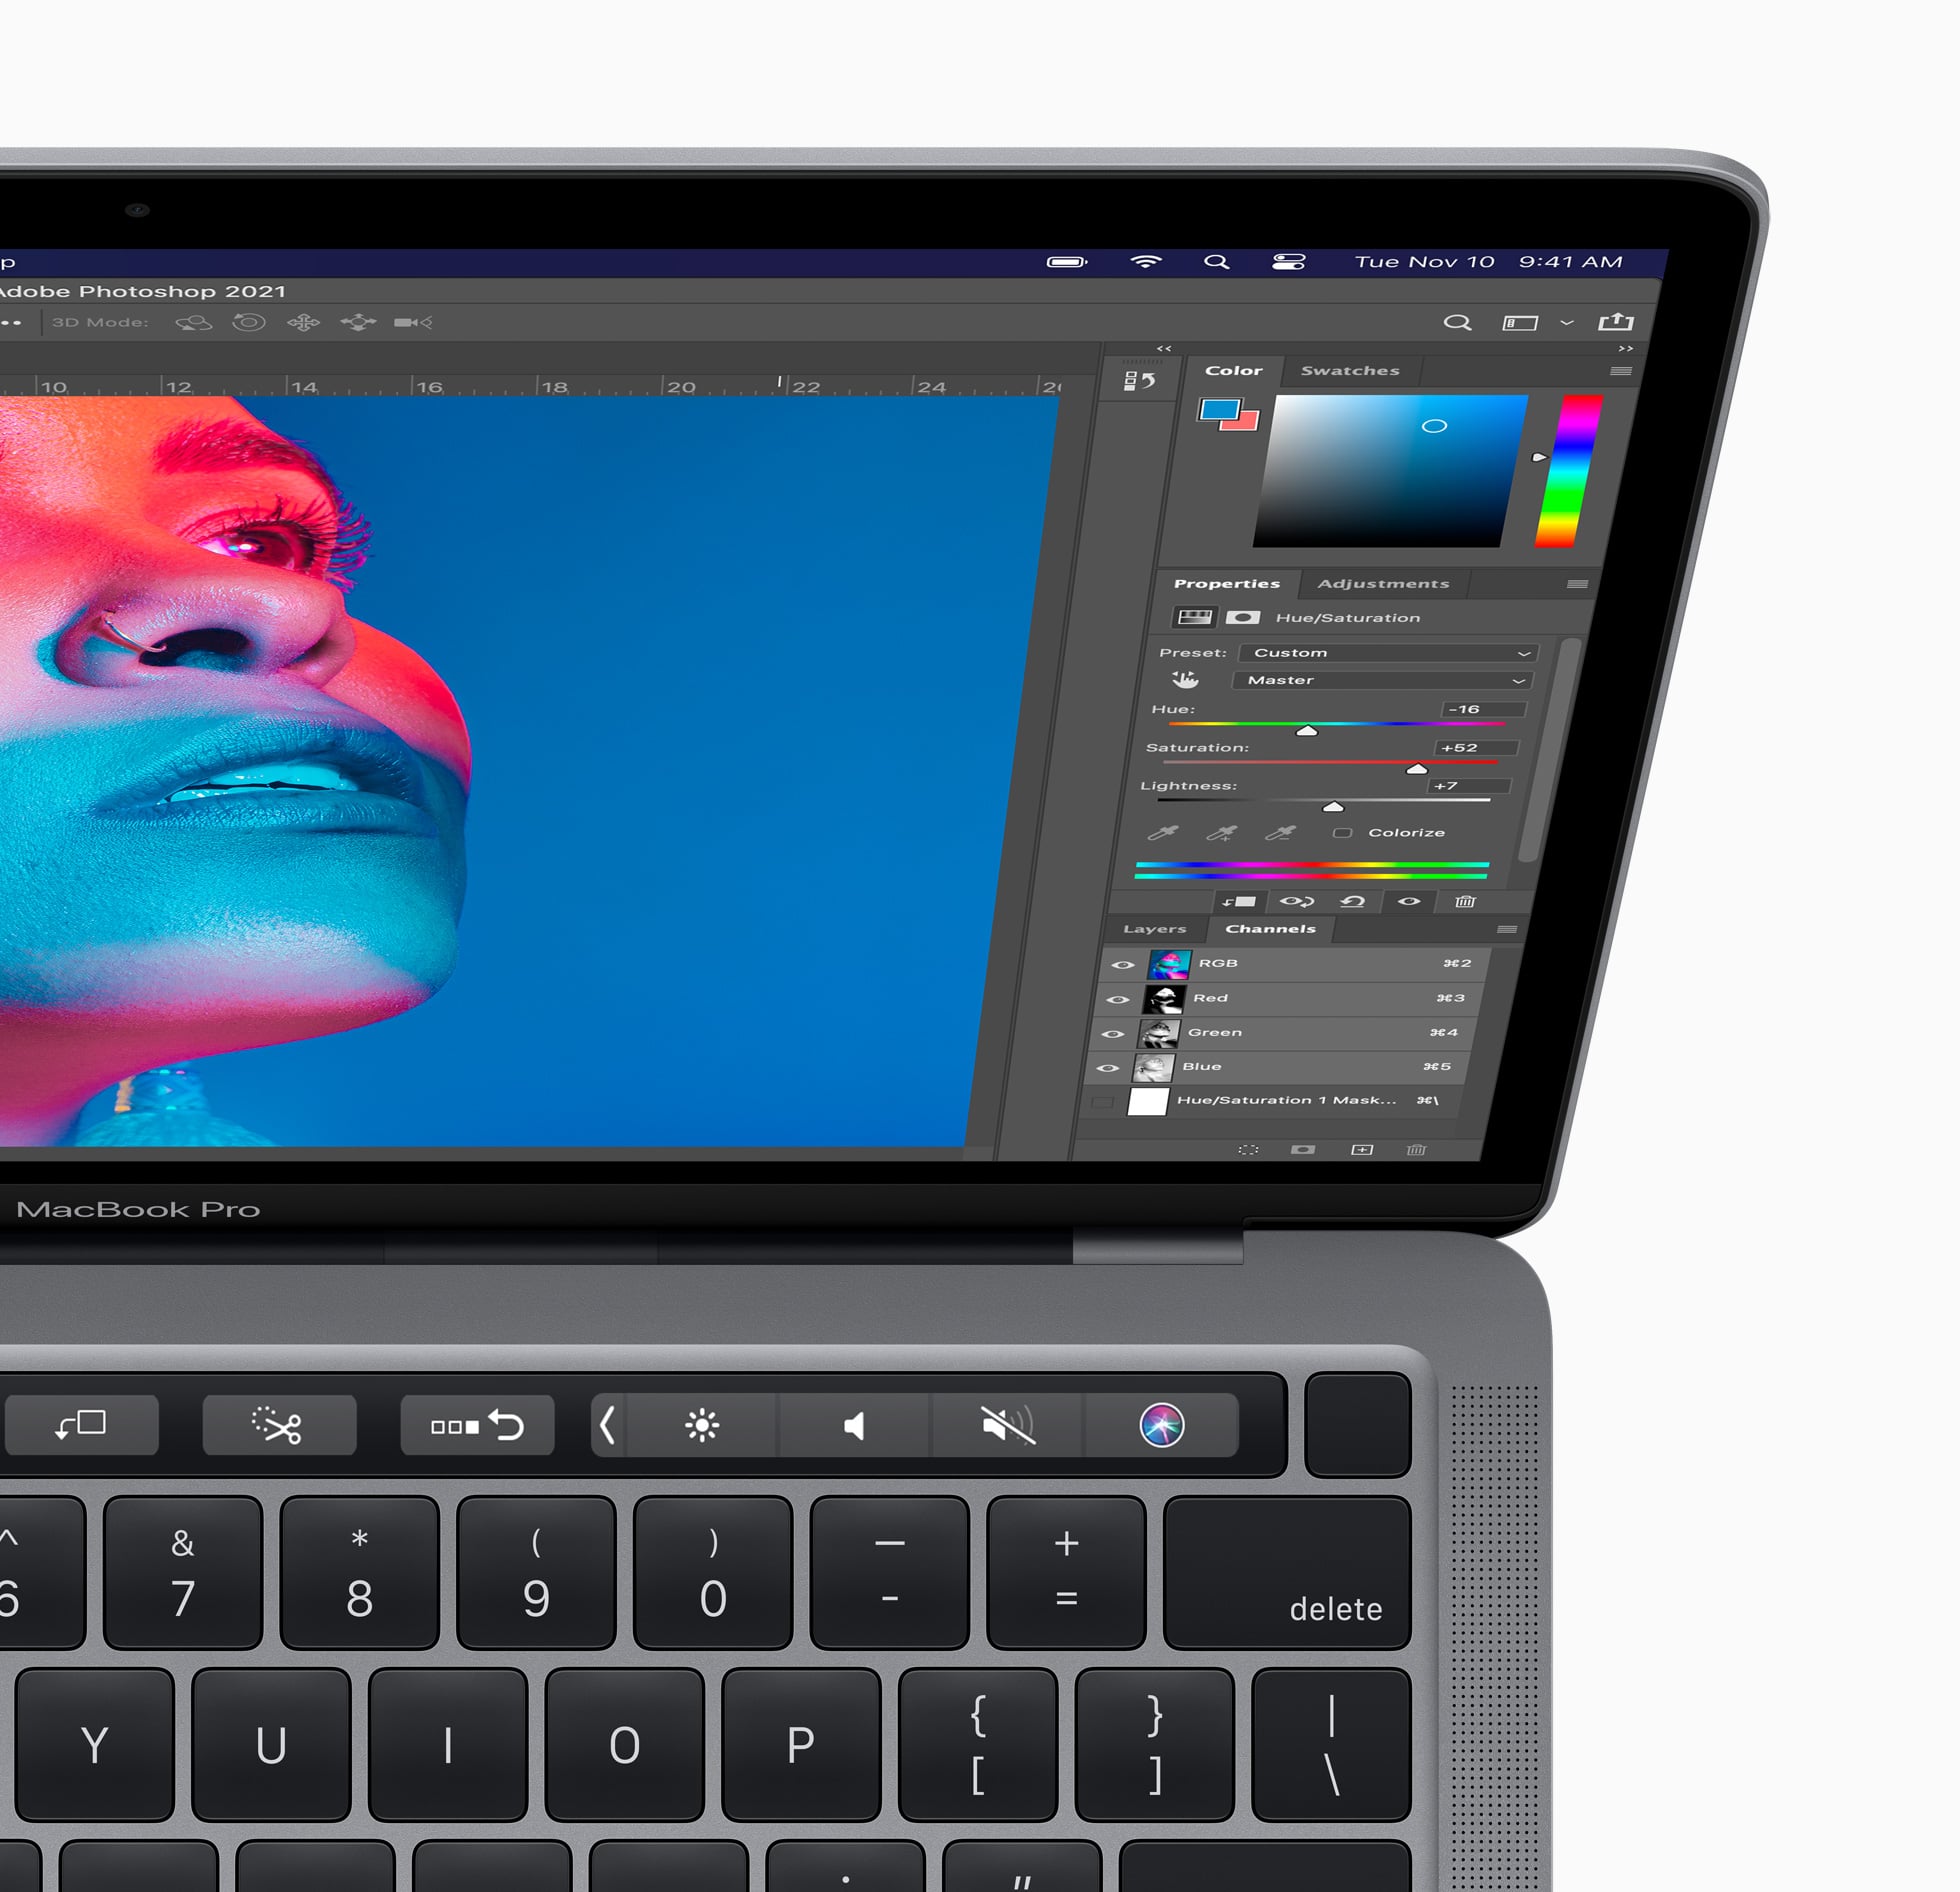 MacBook Pro com chip M1 rodando o Adobe Photoshop